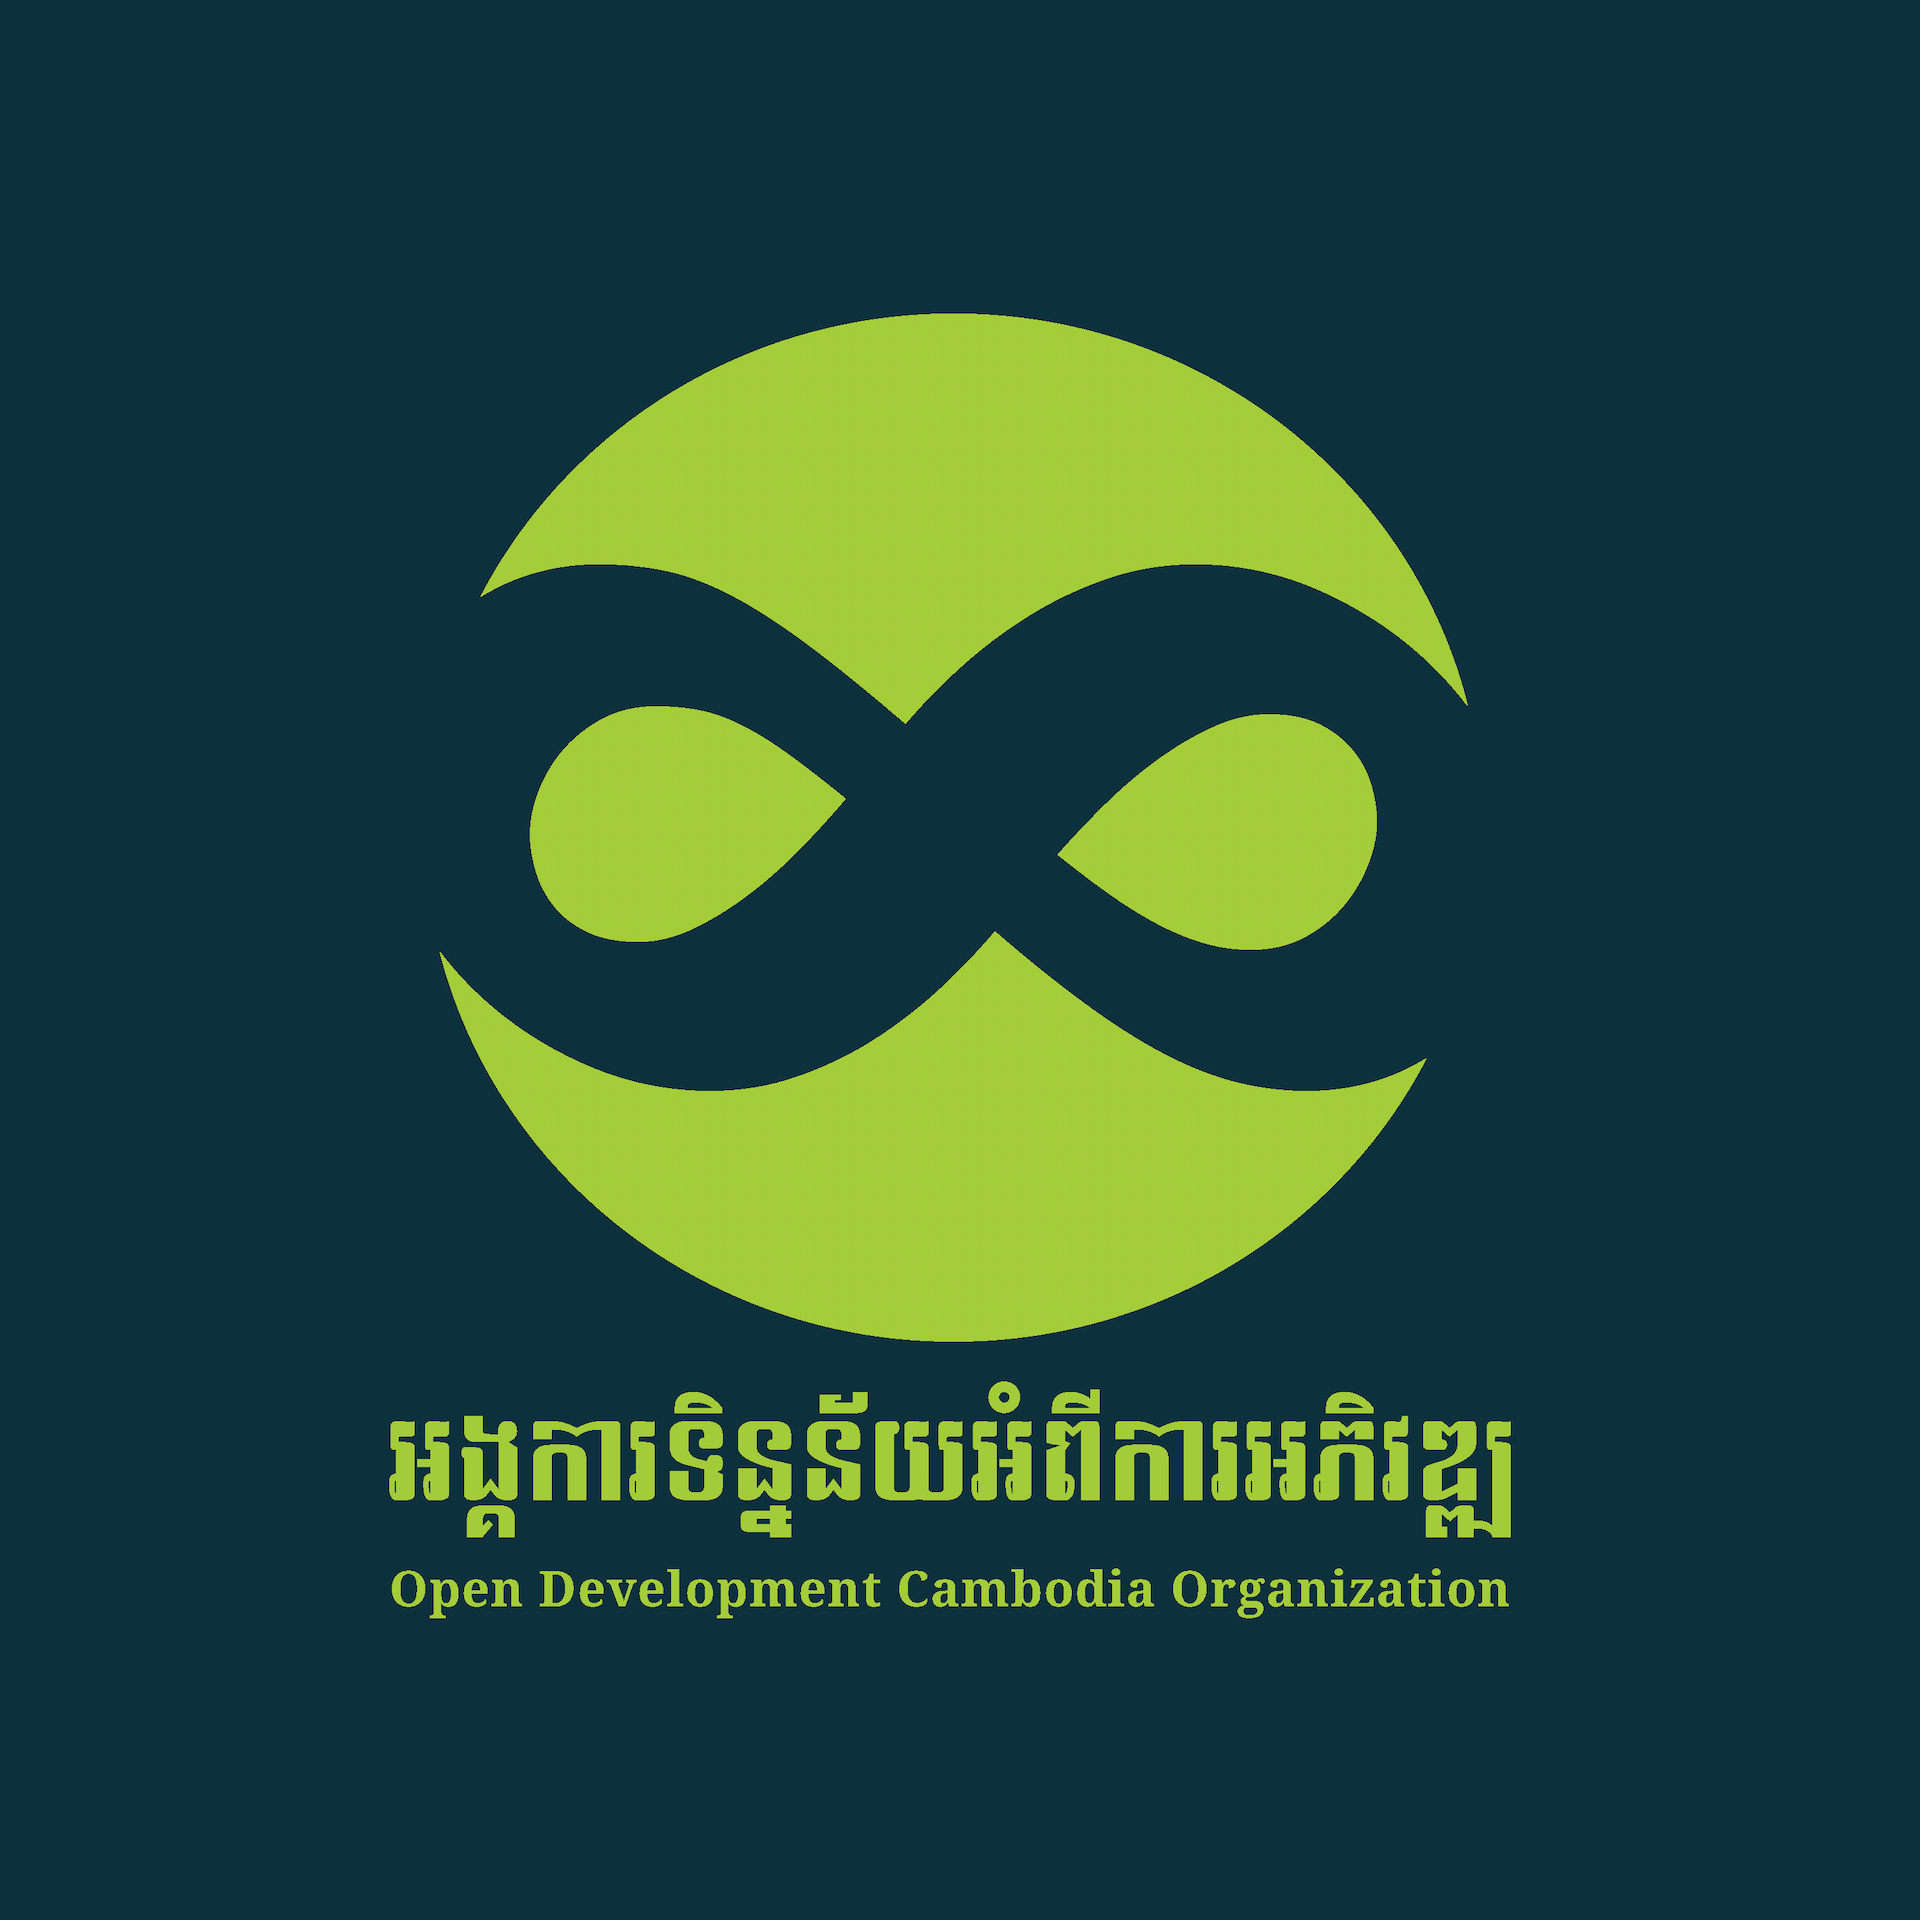 Open Development Cambodia Organization (ODC)